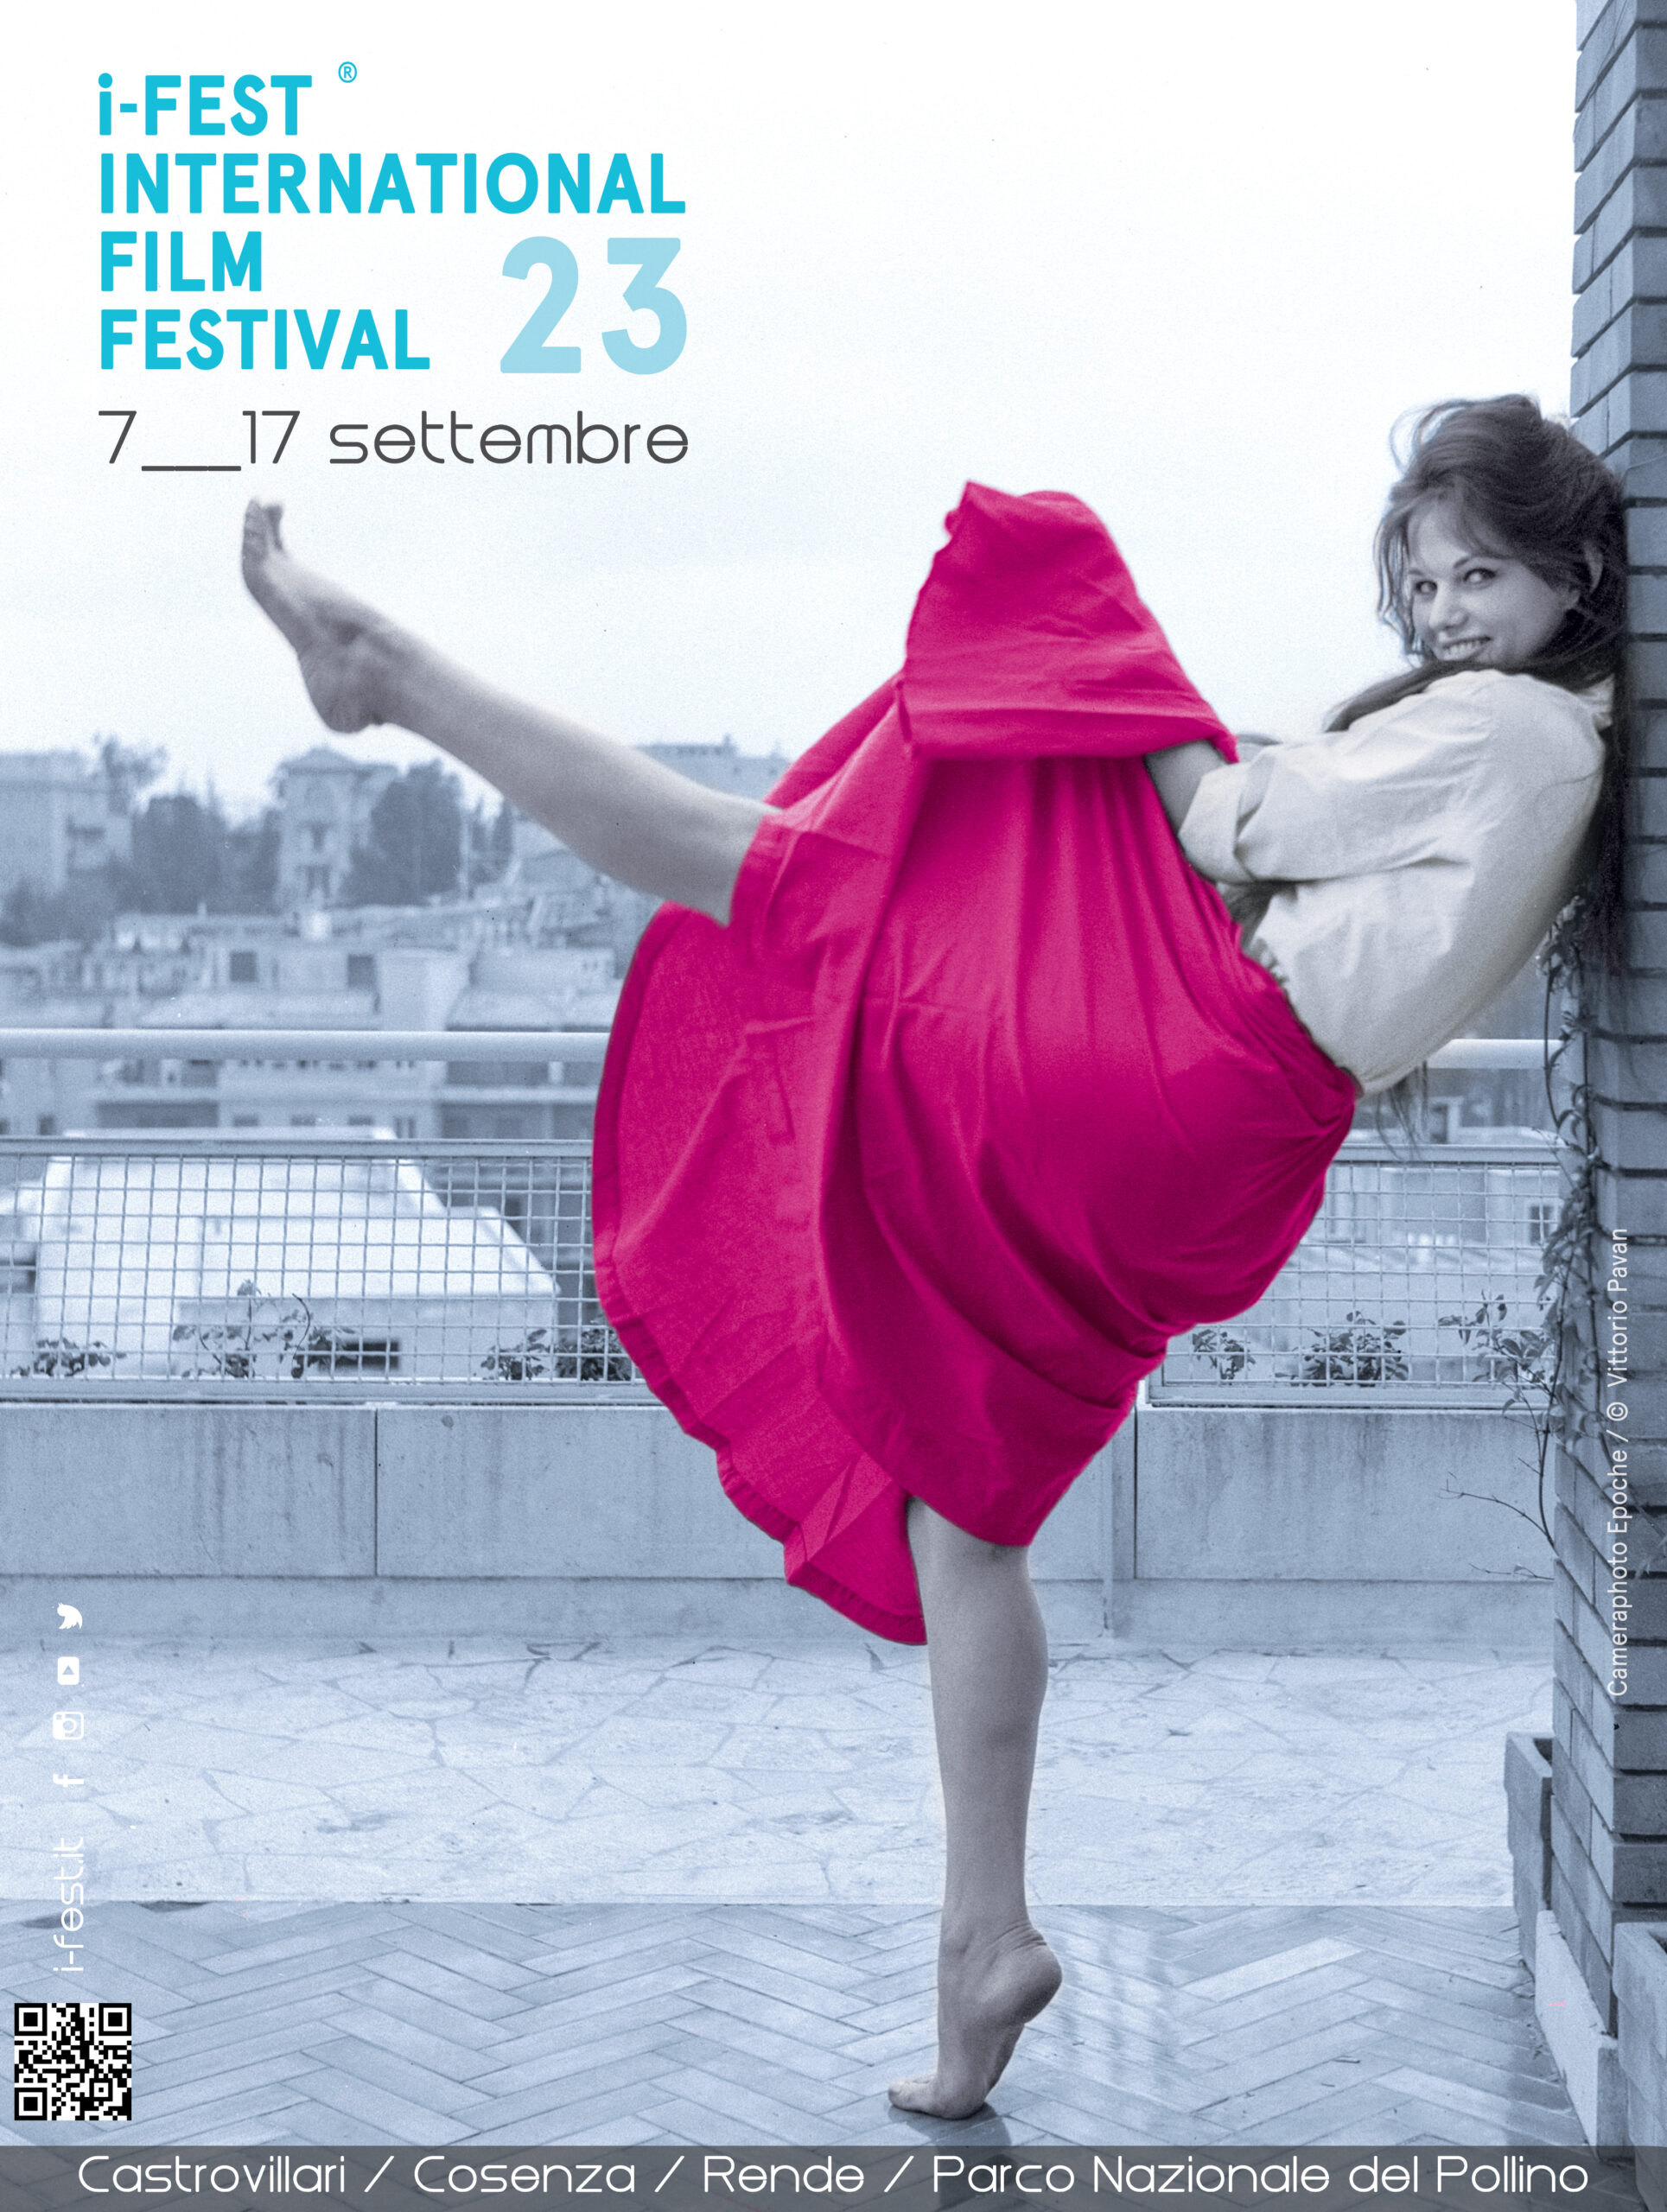 Dal 7 settembre a Castrovillari l’I-Fest International Film Festival